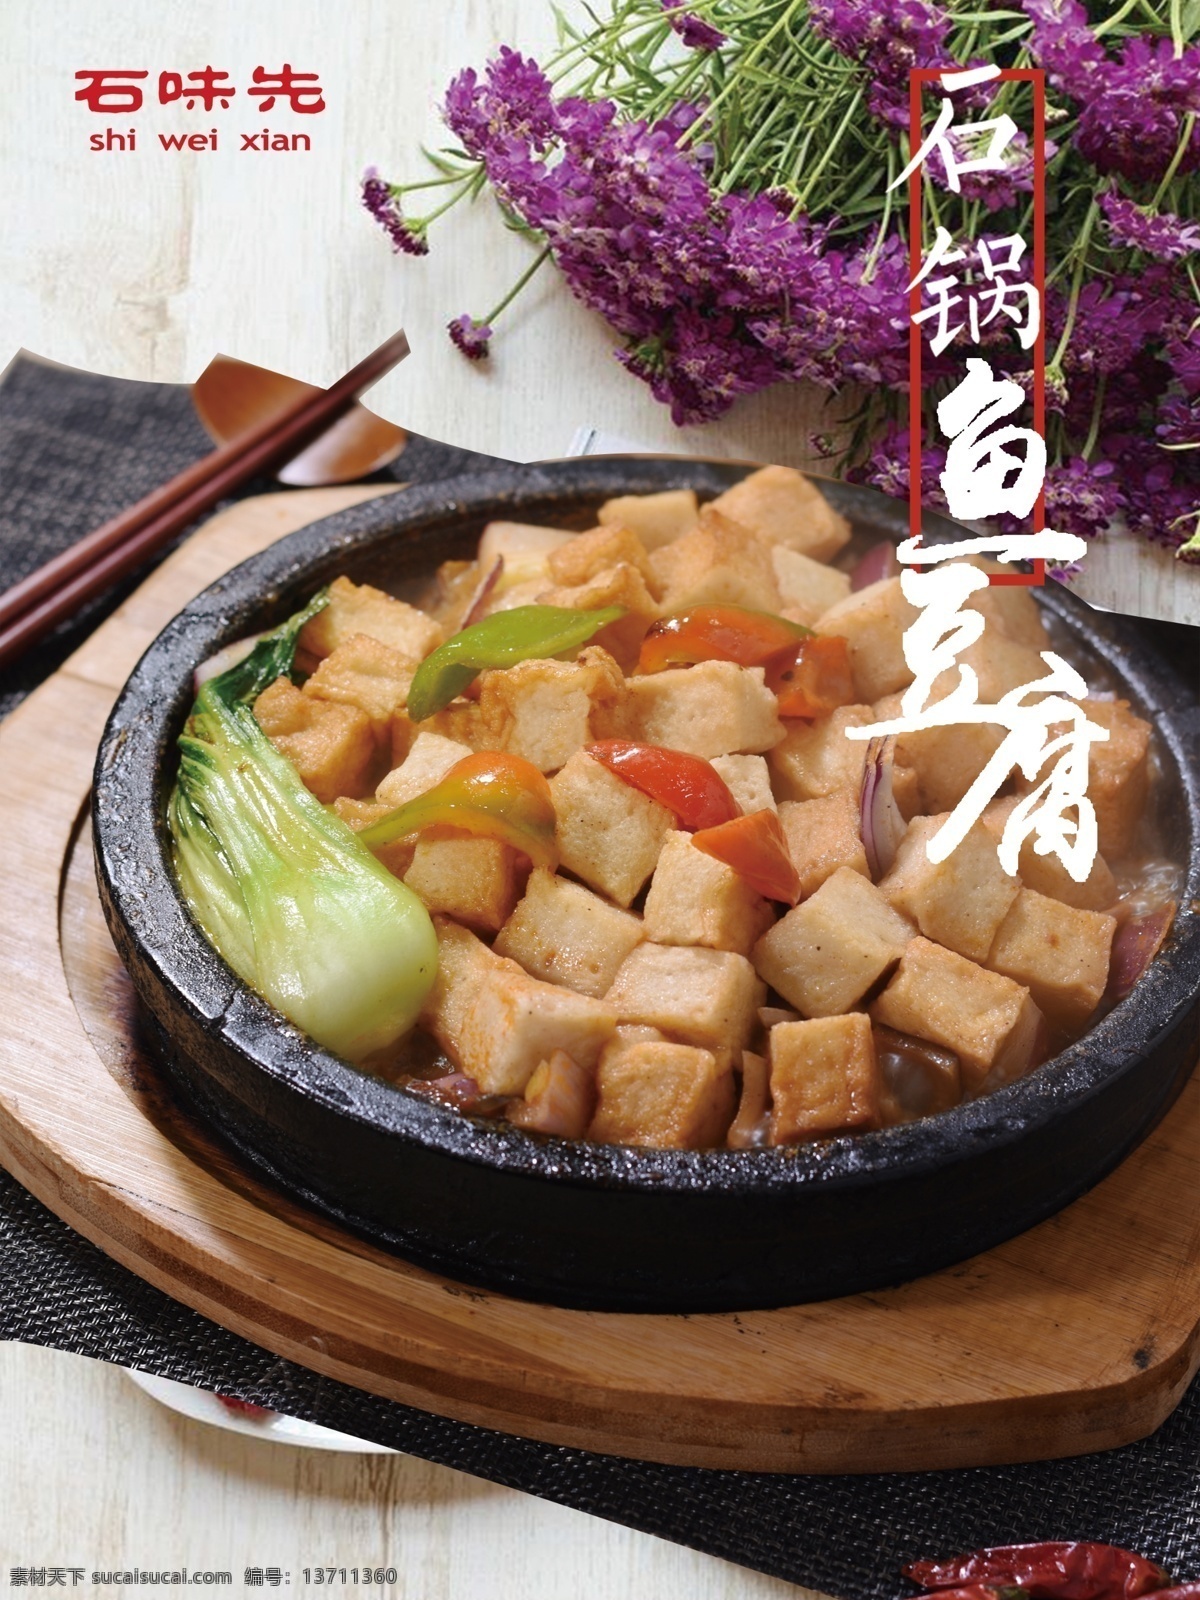 石锅鱼豆腐 石味先 石锅菜 鱼豆腐 小黄鱼 石味先菜品 石味先菜